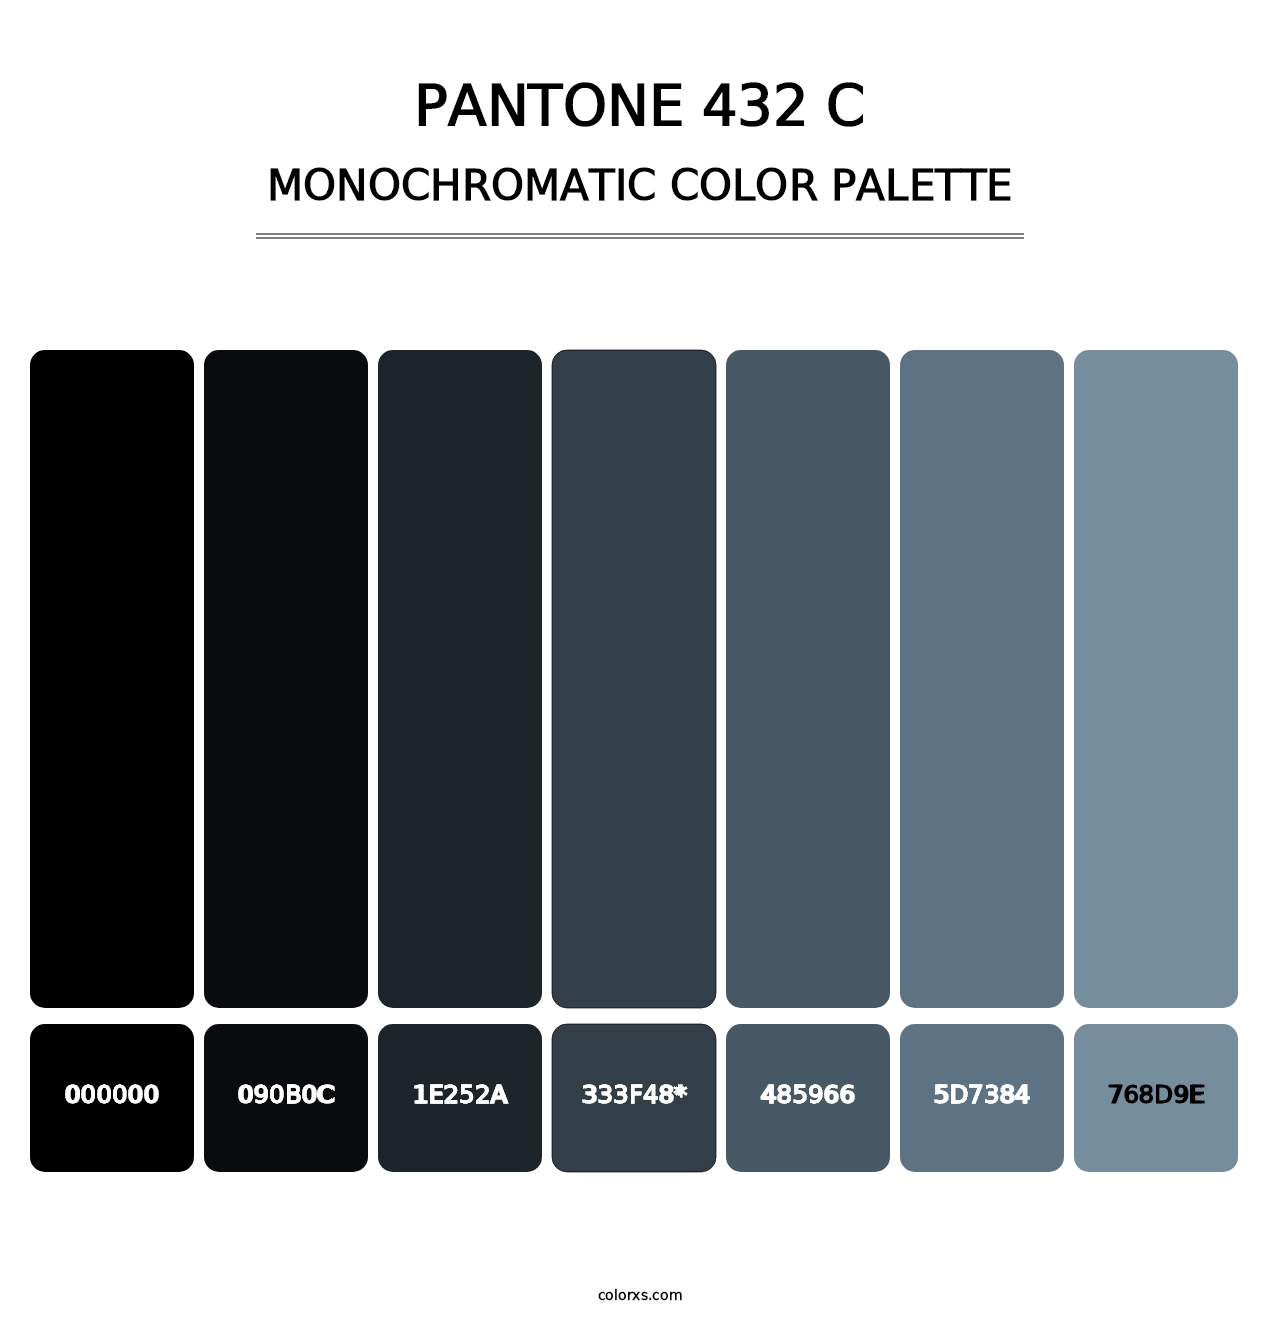 PANTONE 432 C - Monochromatic Color Palette